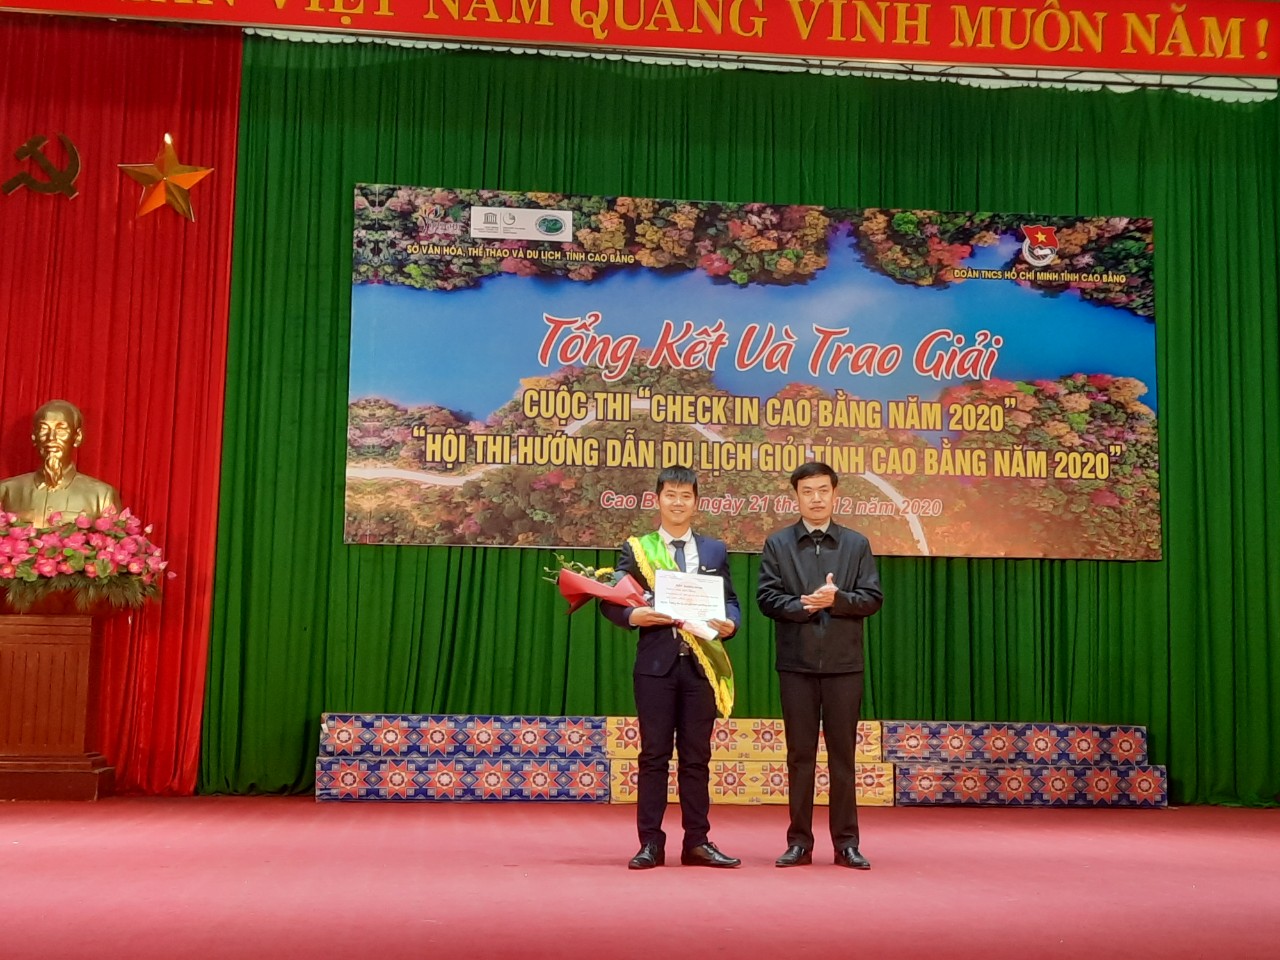 Đc Sầm Việt An trao giải nhất Hội thi hướng dẫn du lịch giỏi